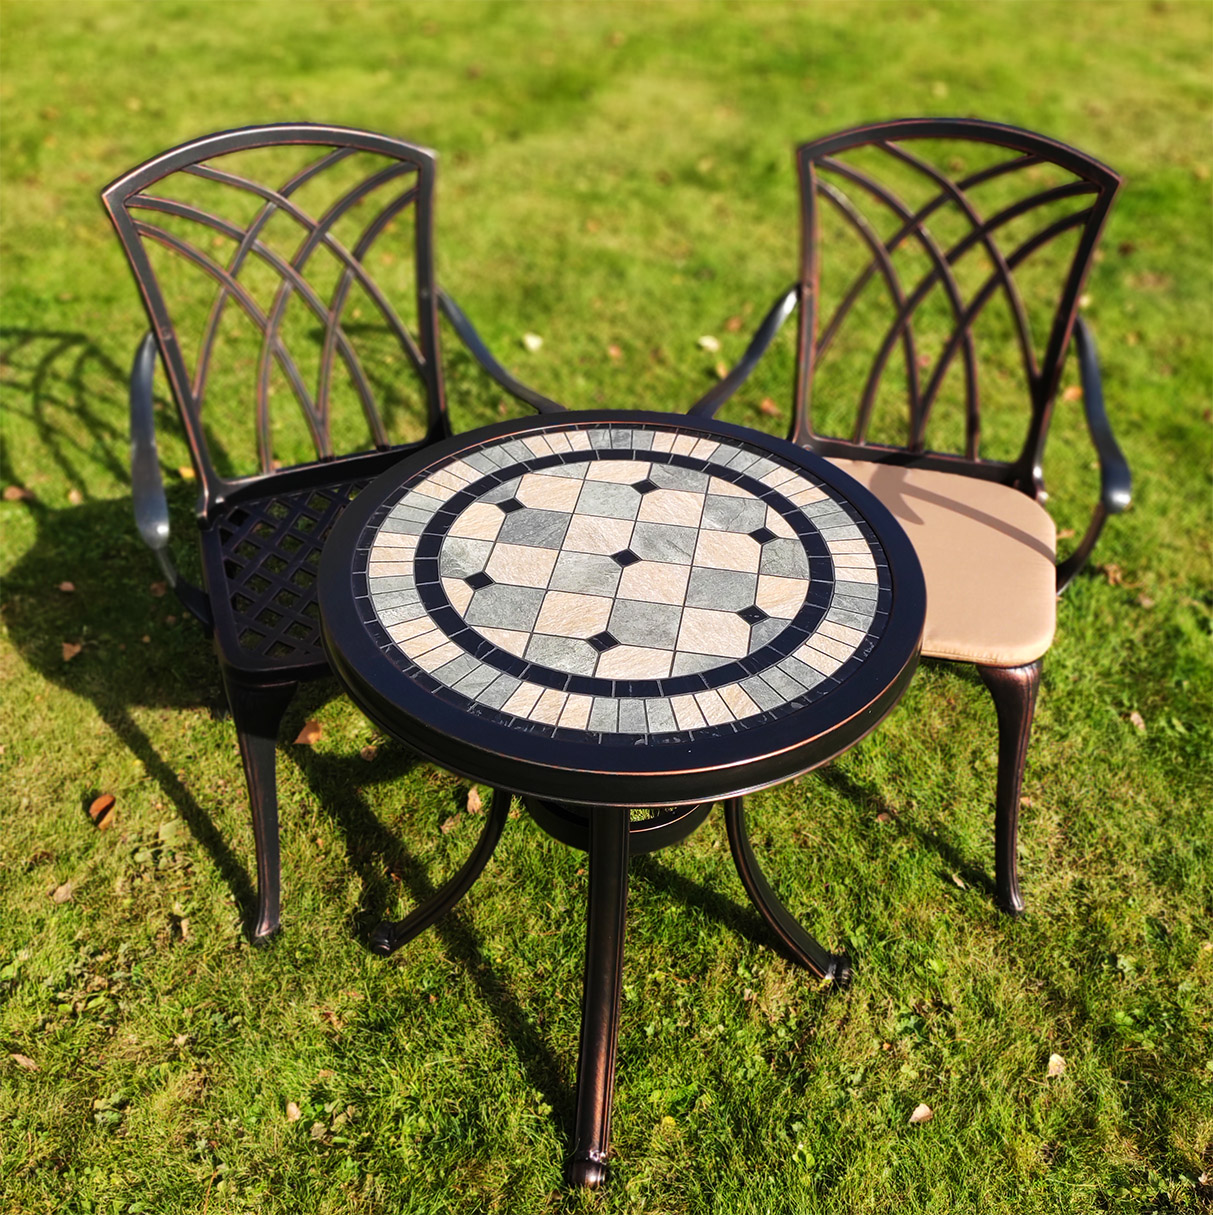 Комплект уличной мебели с керамическим столом, стол с плиткой на столешнице, металлический столик, кресла из алюминия и стол с камнем, стол с мозаикой, кованая мебель для кафе